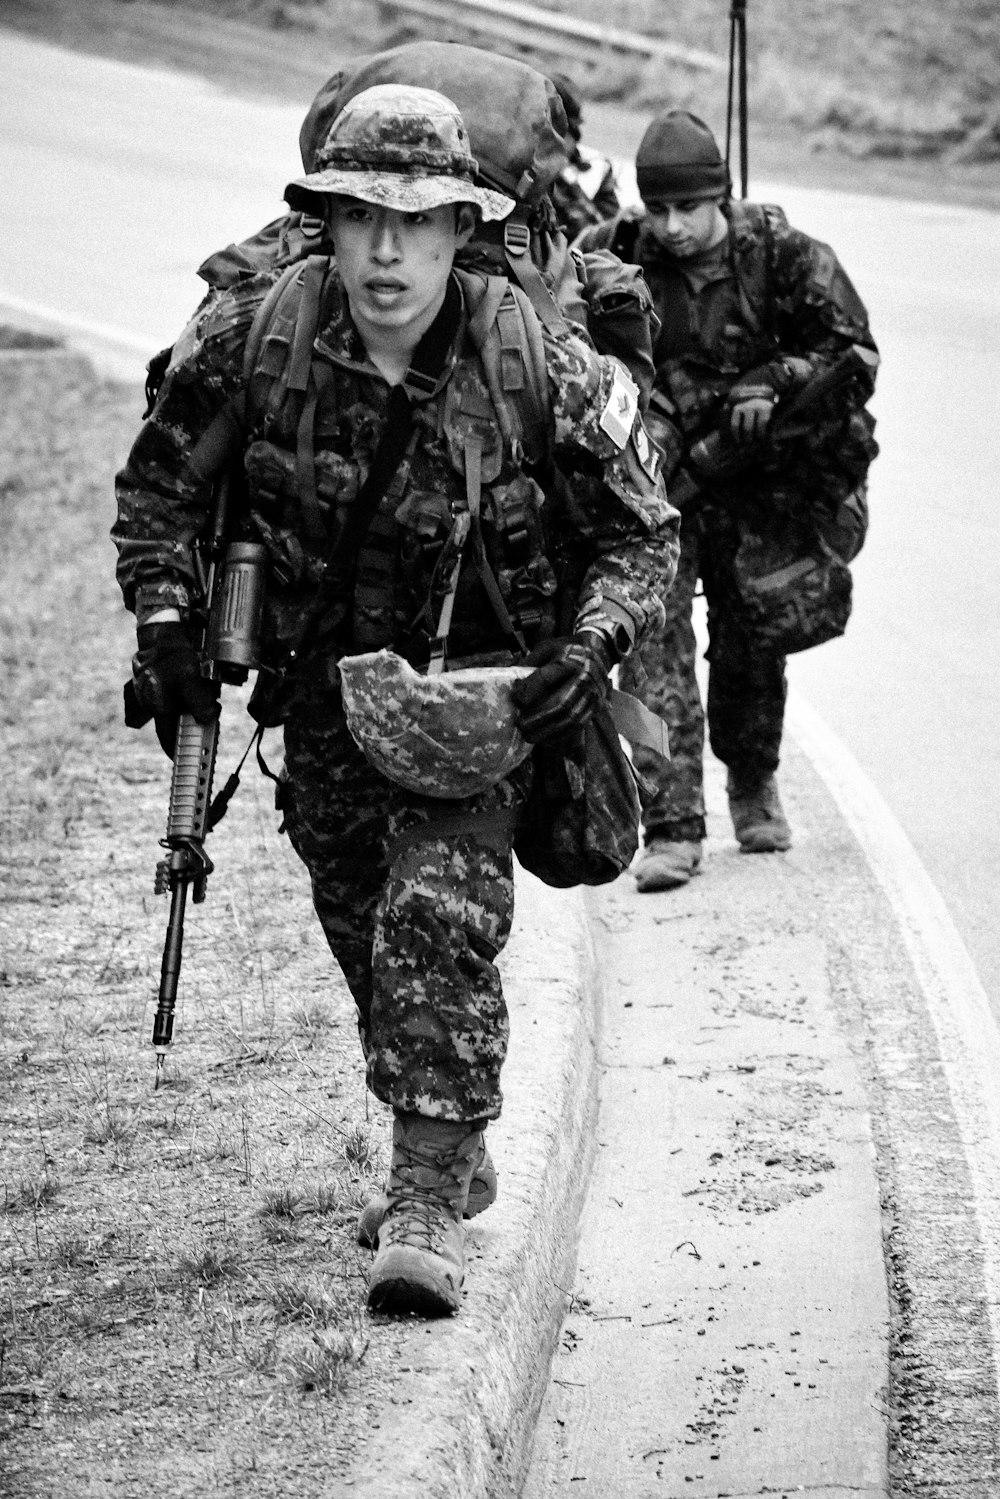 Un groupe de soldats marchant sur une route